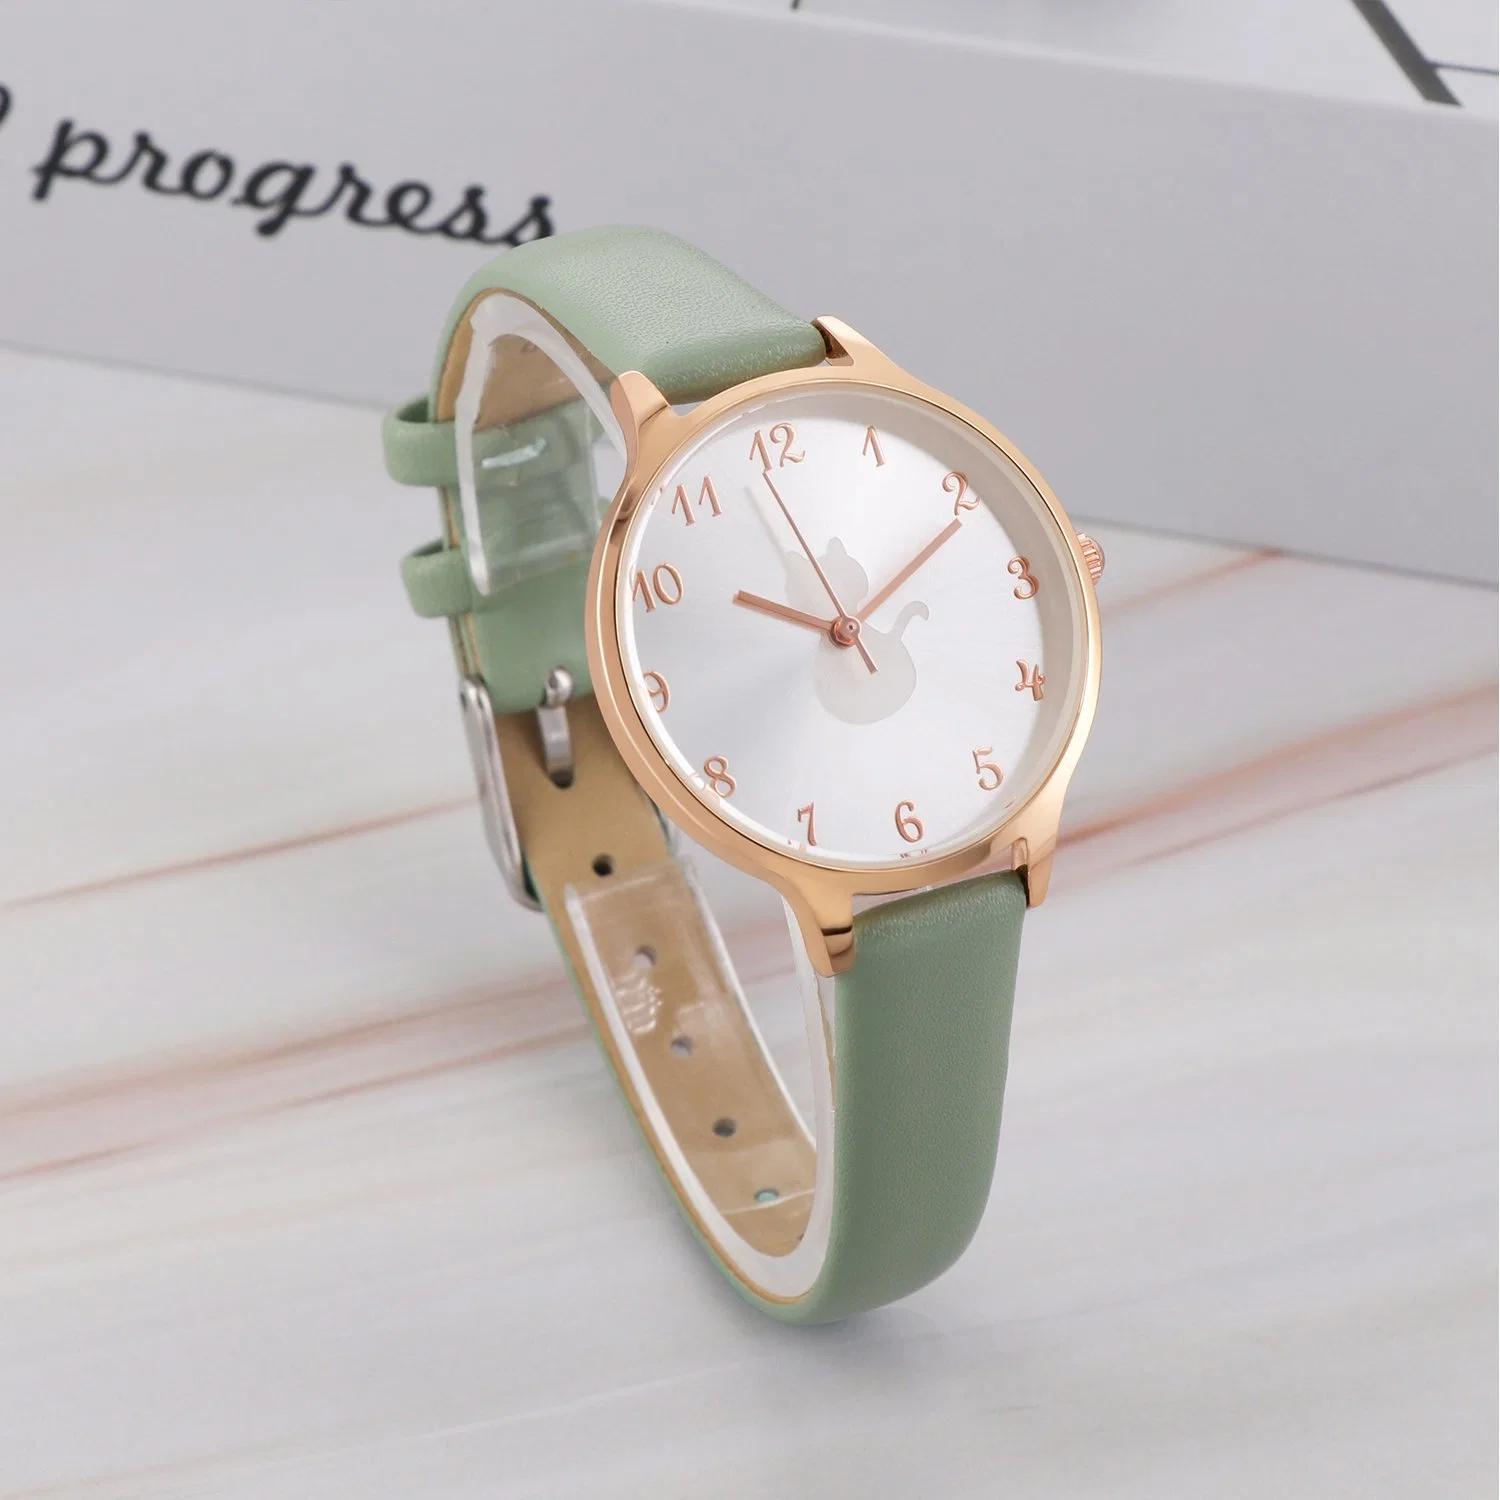 Armbanduhr mit Damenuhr Fashionl Uhr für Geschenk-Uhr Lederuhr Quarzuhr Fashion Watch Edelstahl Uhr Analog Damenuhr